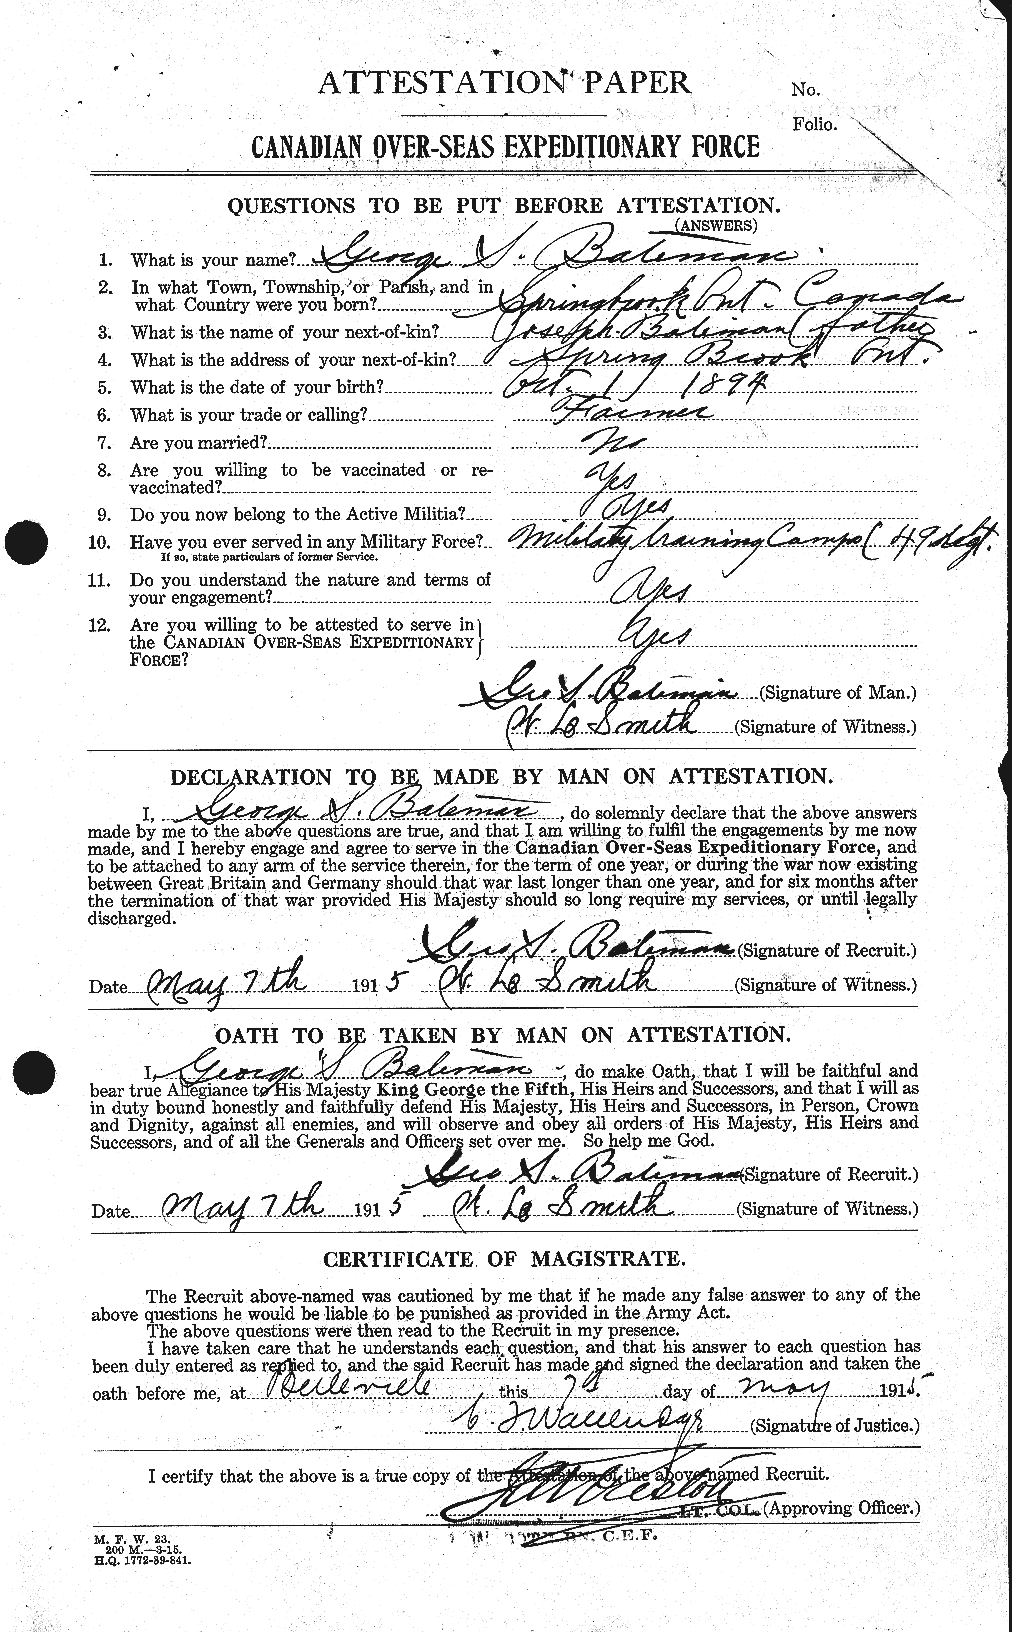 Dossiers du Personnel de la Première Guerre mondiale - CEC 228029a